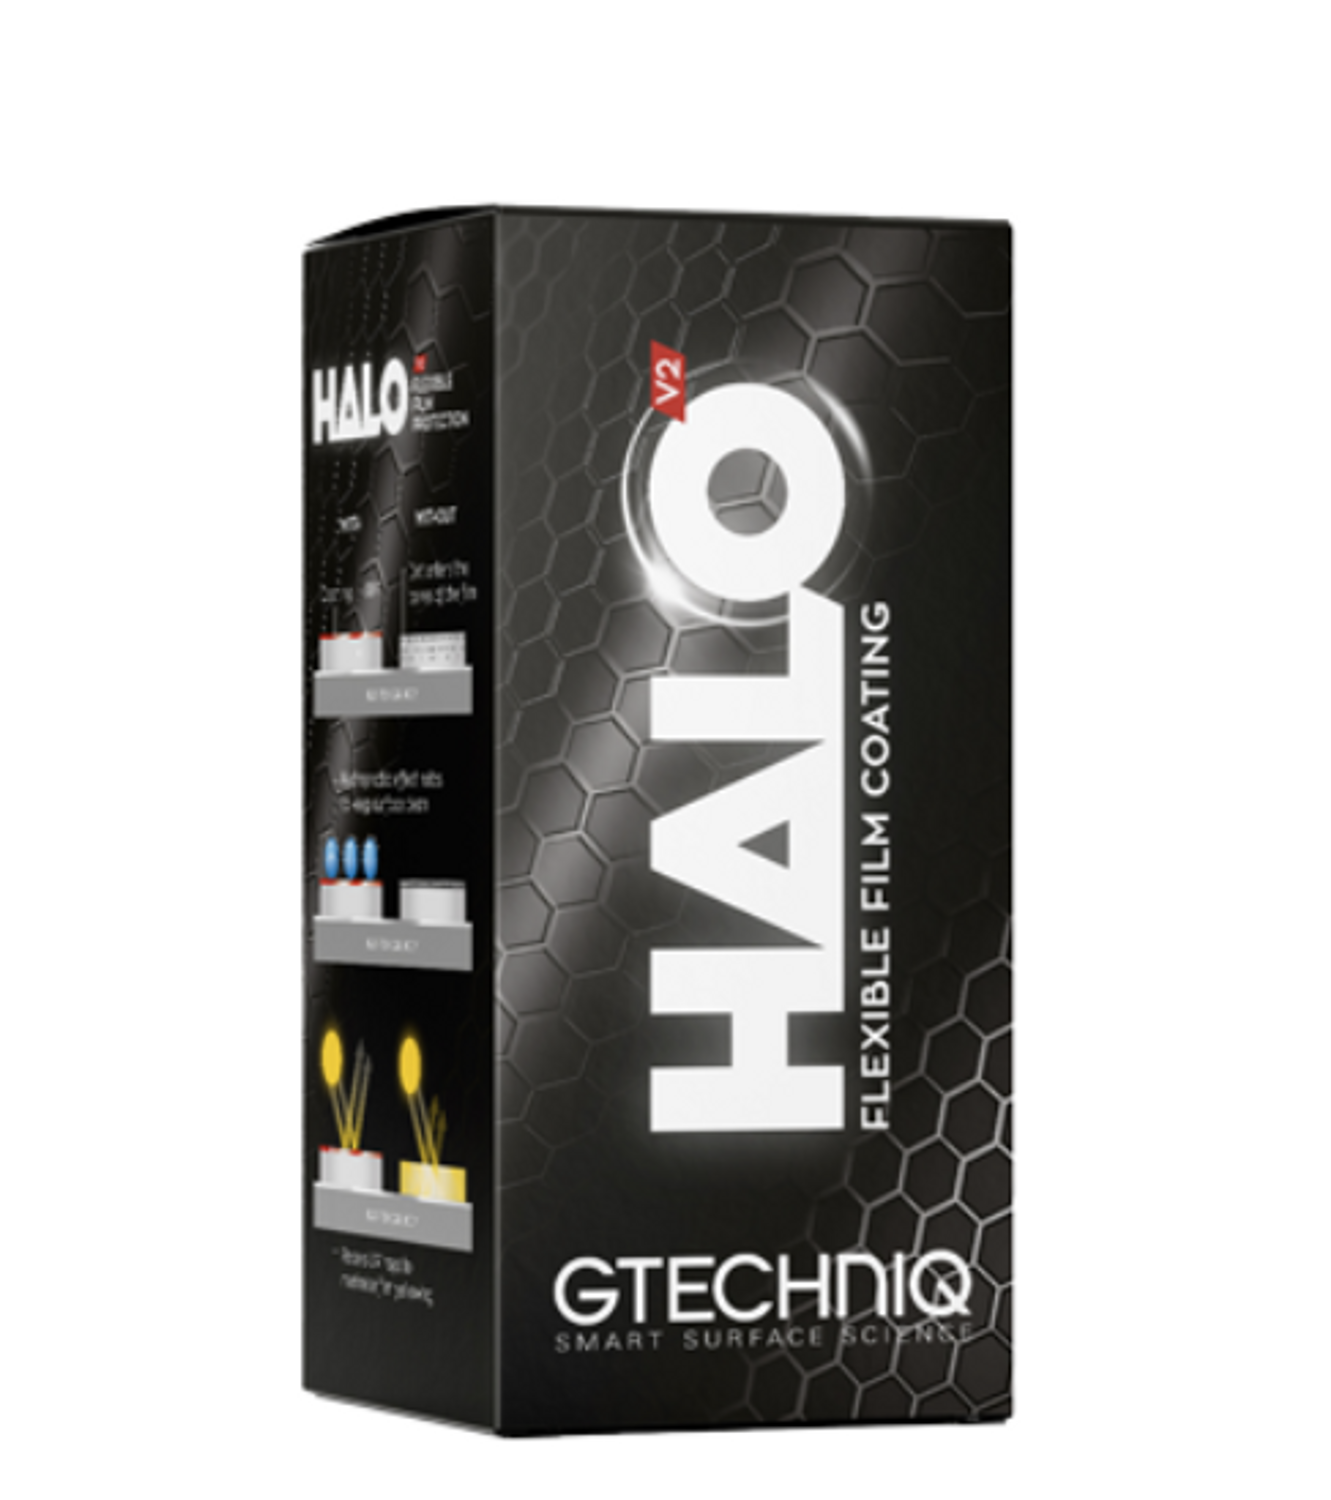 Gtechniq Halo v2 30ml | Flexible Film Ceramic Coating | PPF and Vinyl